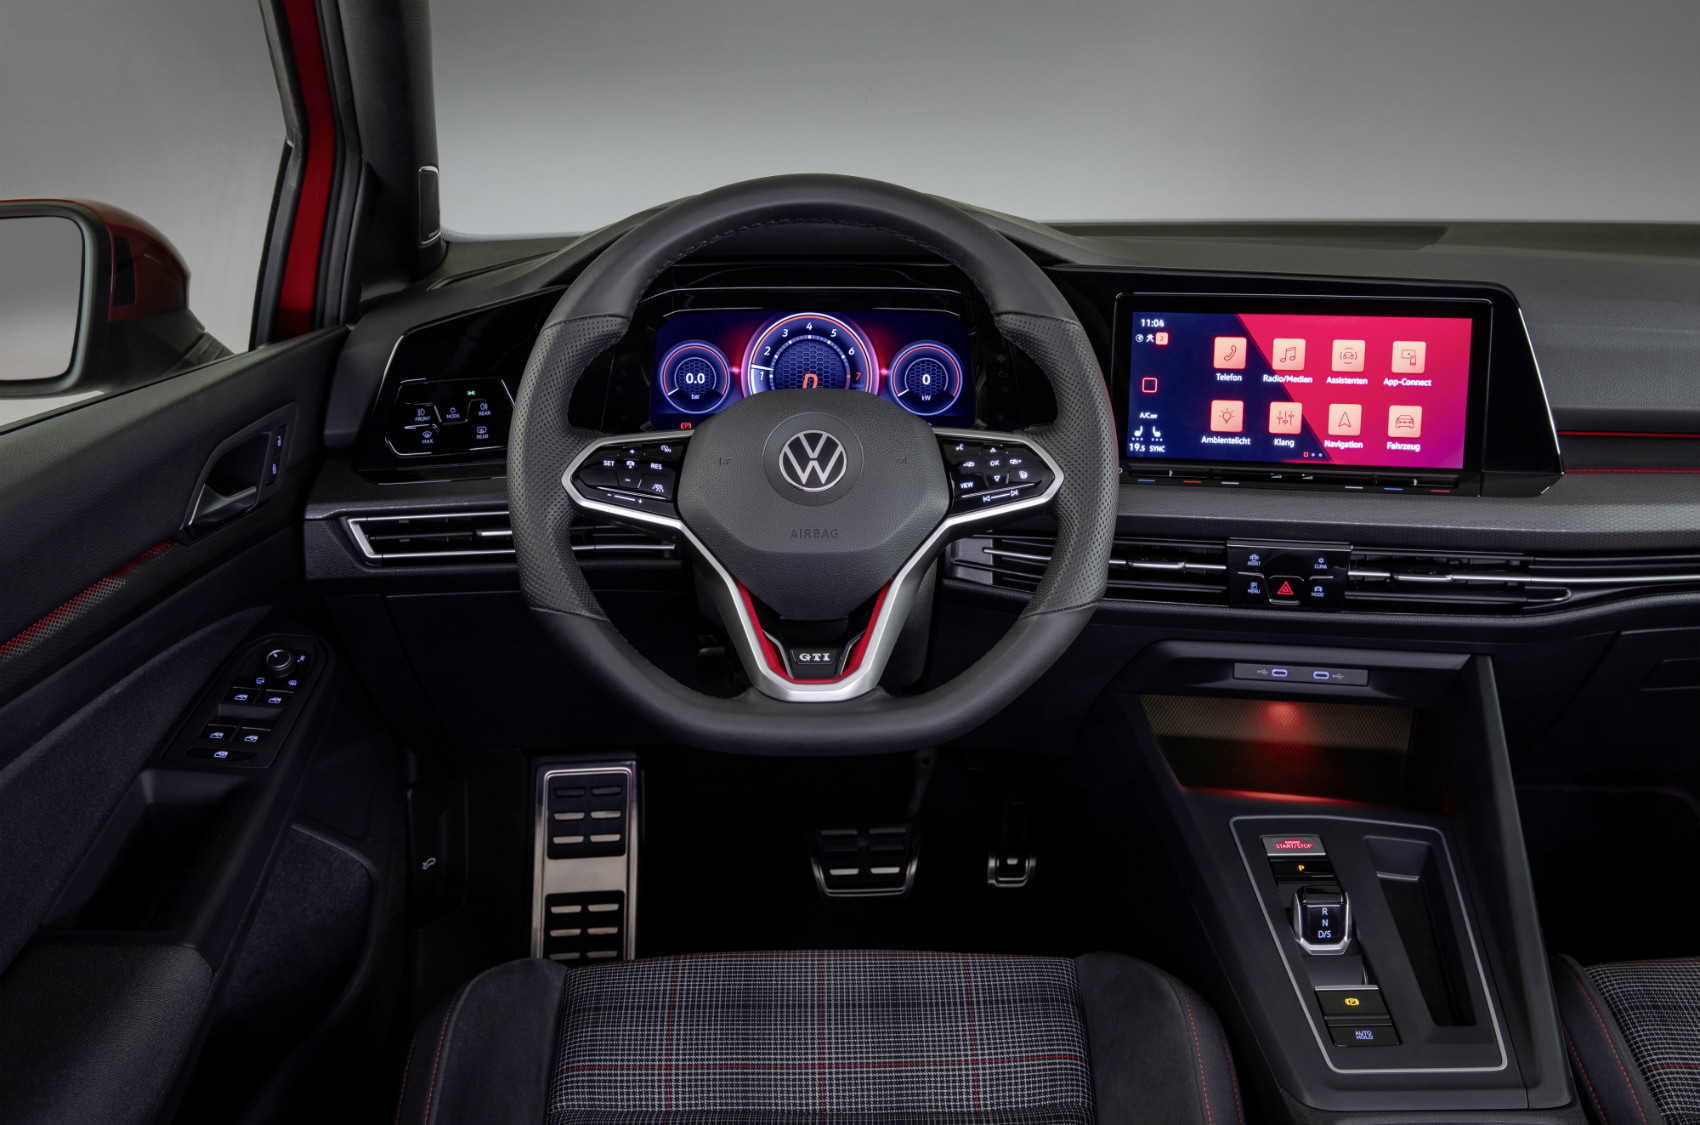 Reformulado igualmente no interior, o Voklswagen Golf GTI aposta em linhas simples e na (quase) ausência de comandos físicos, preferindo a digitalização 